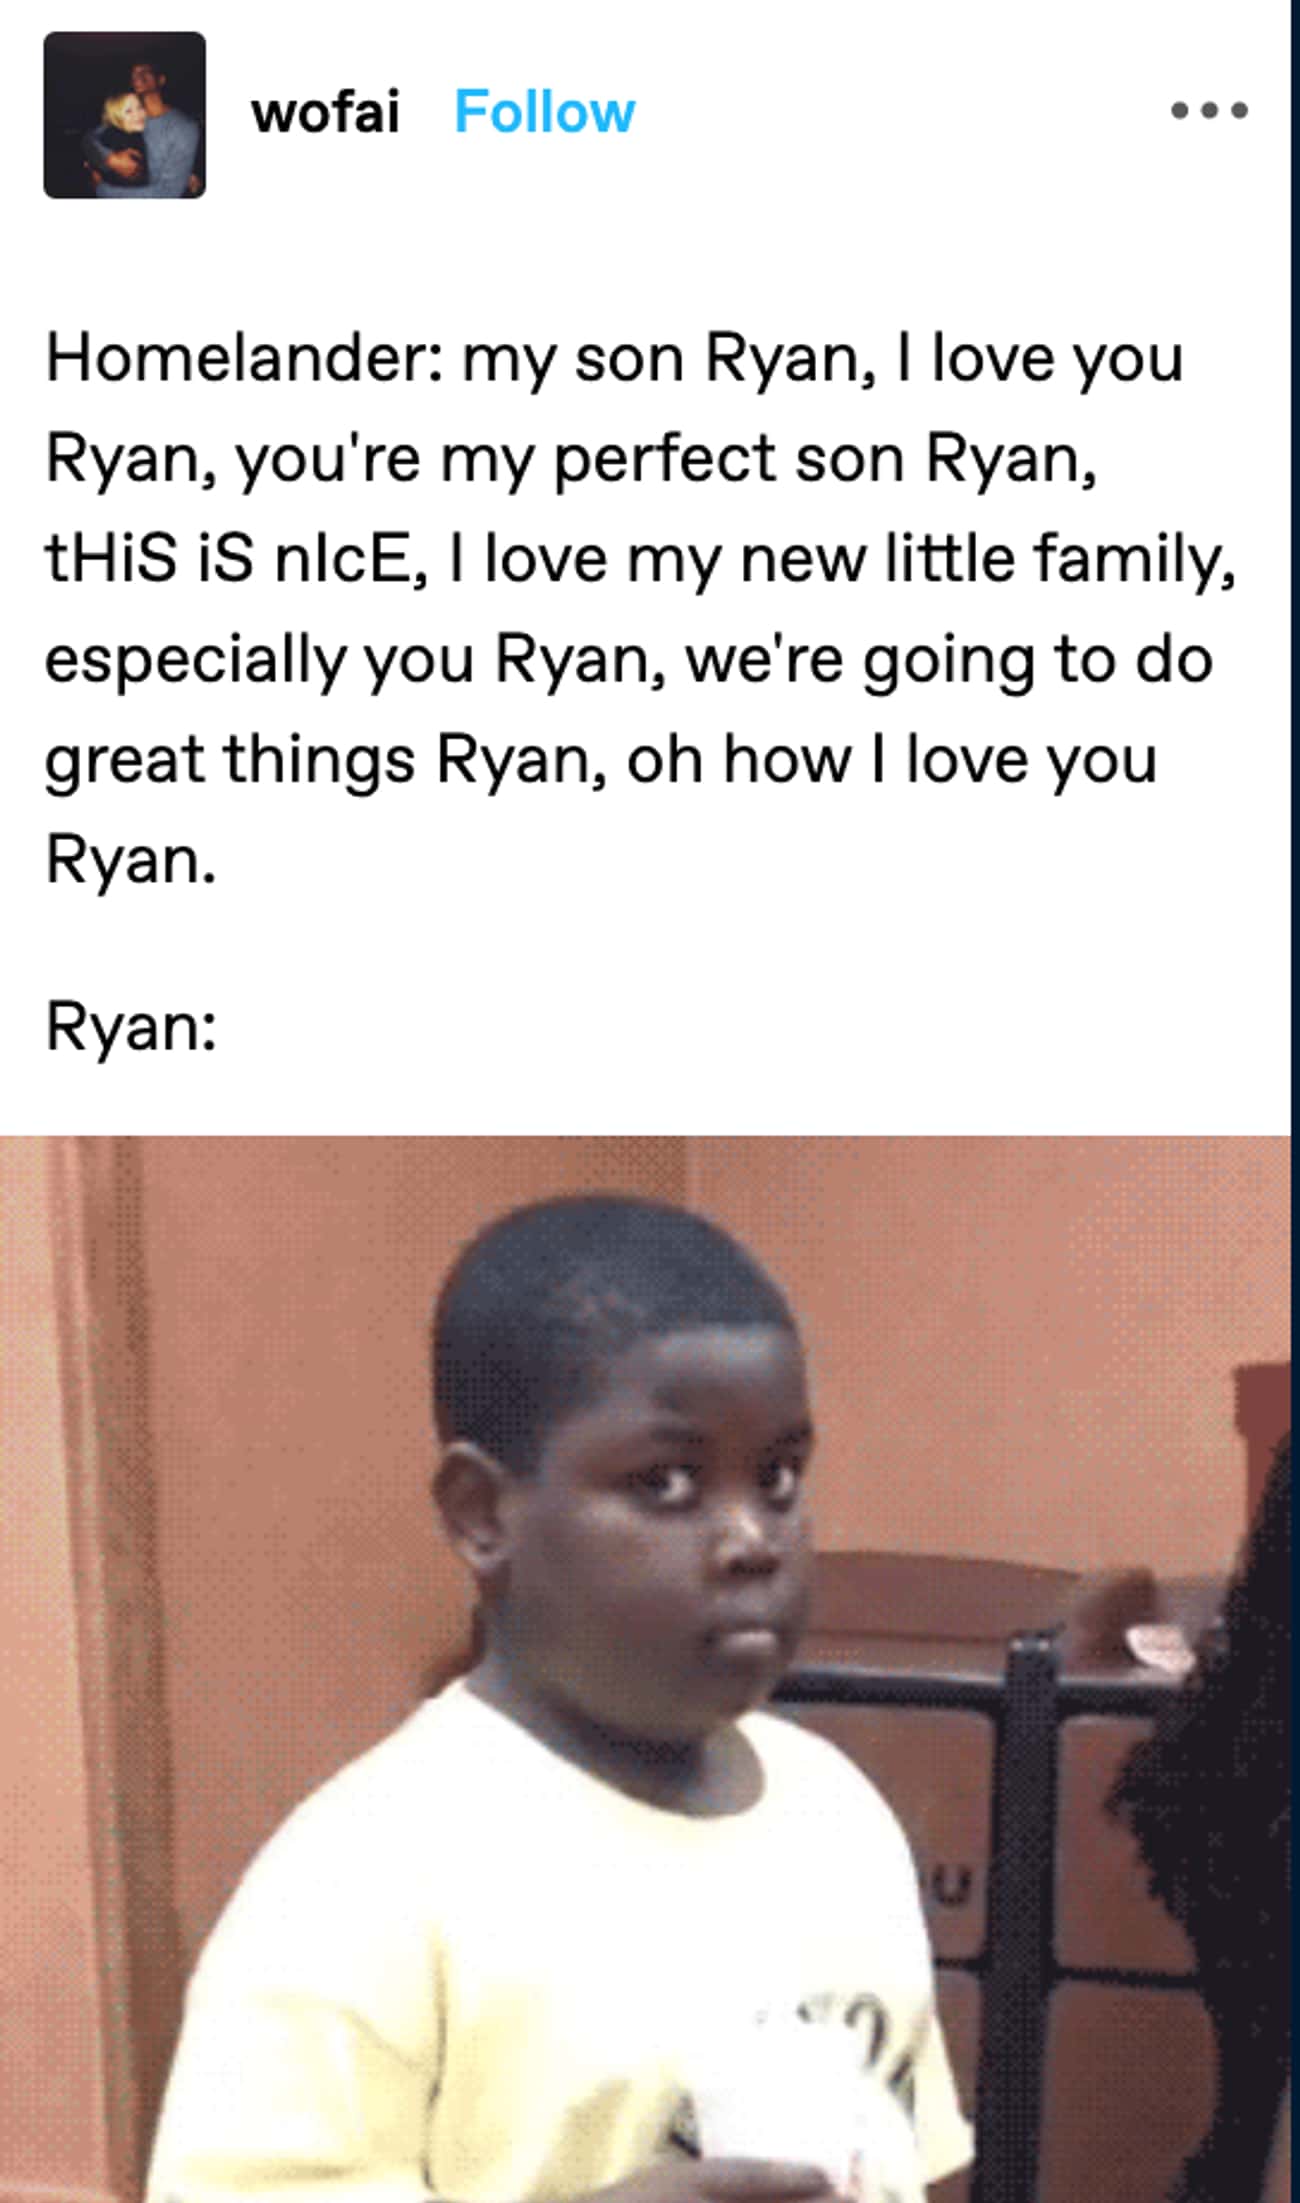 Poor Ryan